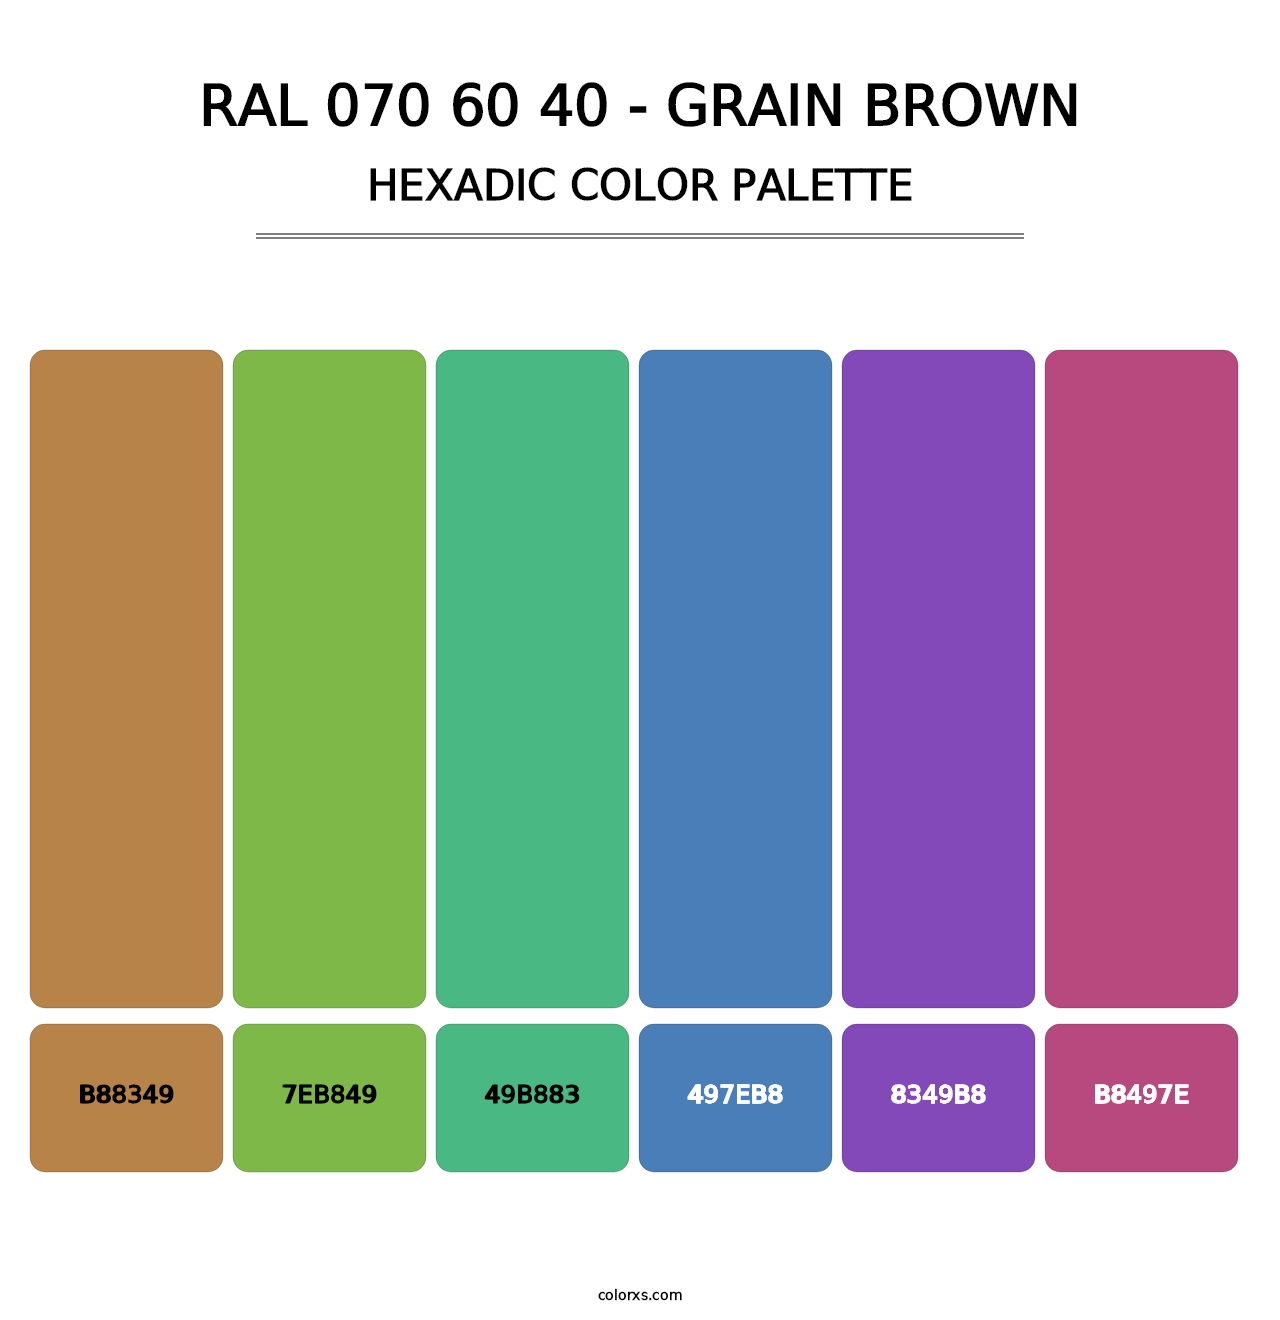 RAL 070 60 40 - Grain Brown - Hexadic Color Palette